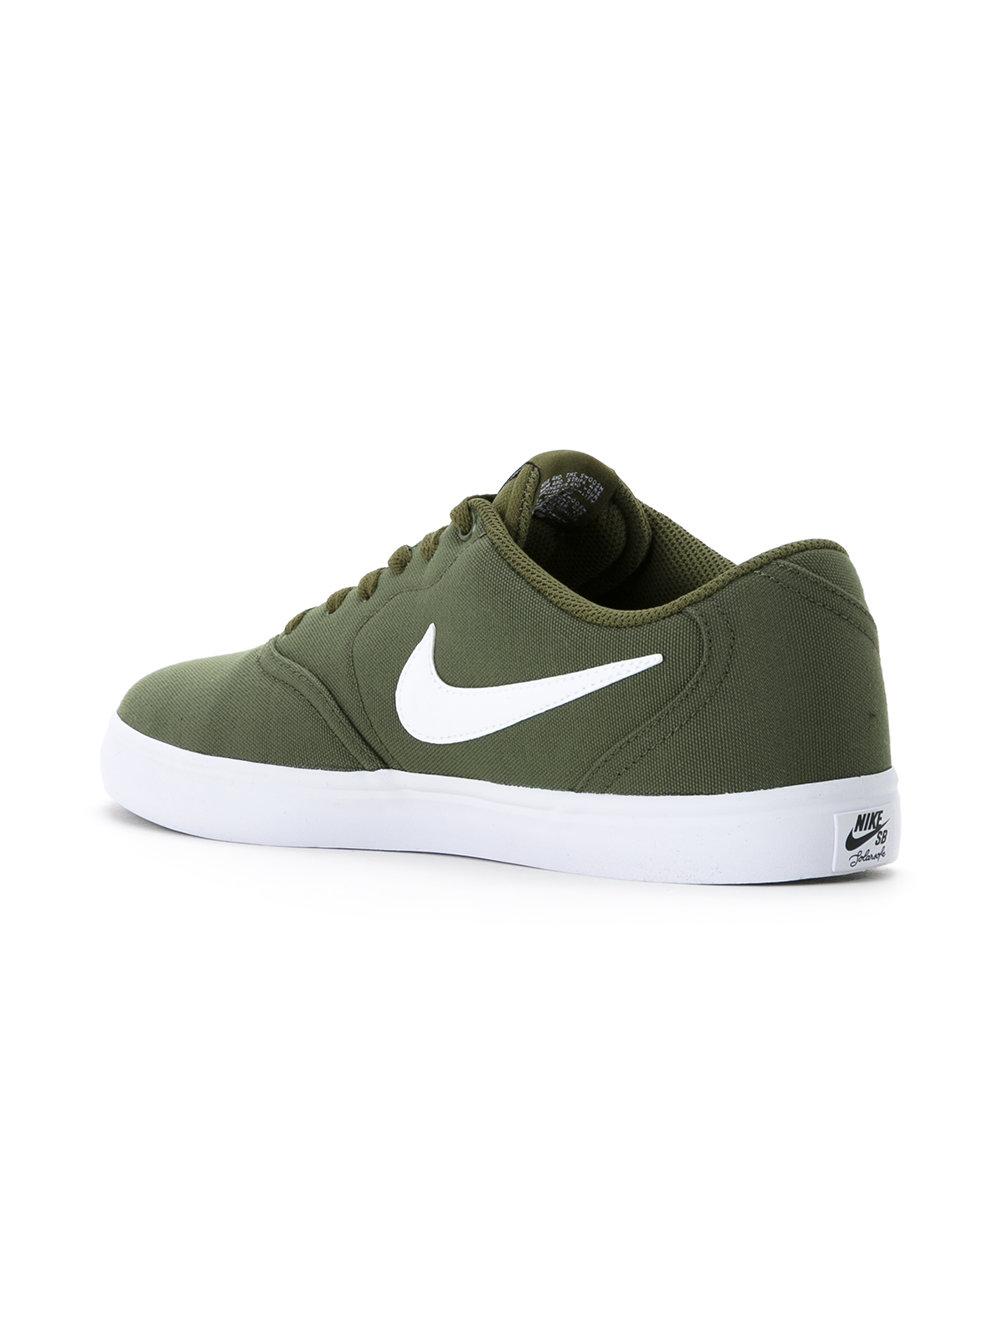 Nike Sb Check Solarsoft Canvas Men's Skateboarding Shoe in Legion  Green/White (Green) for Men | Lyst